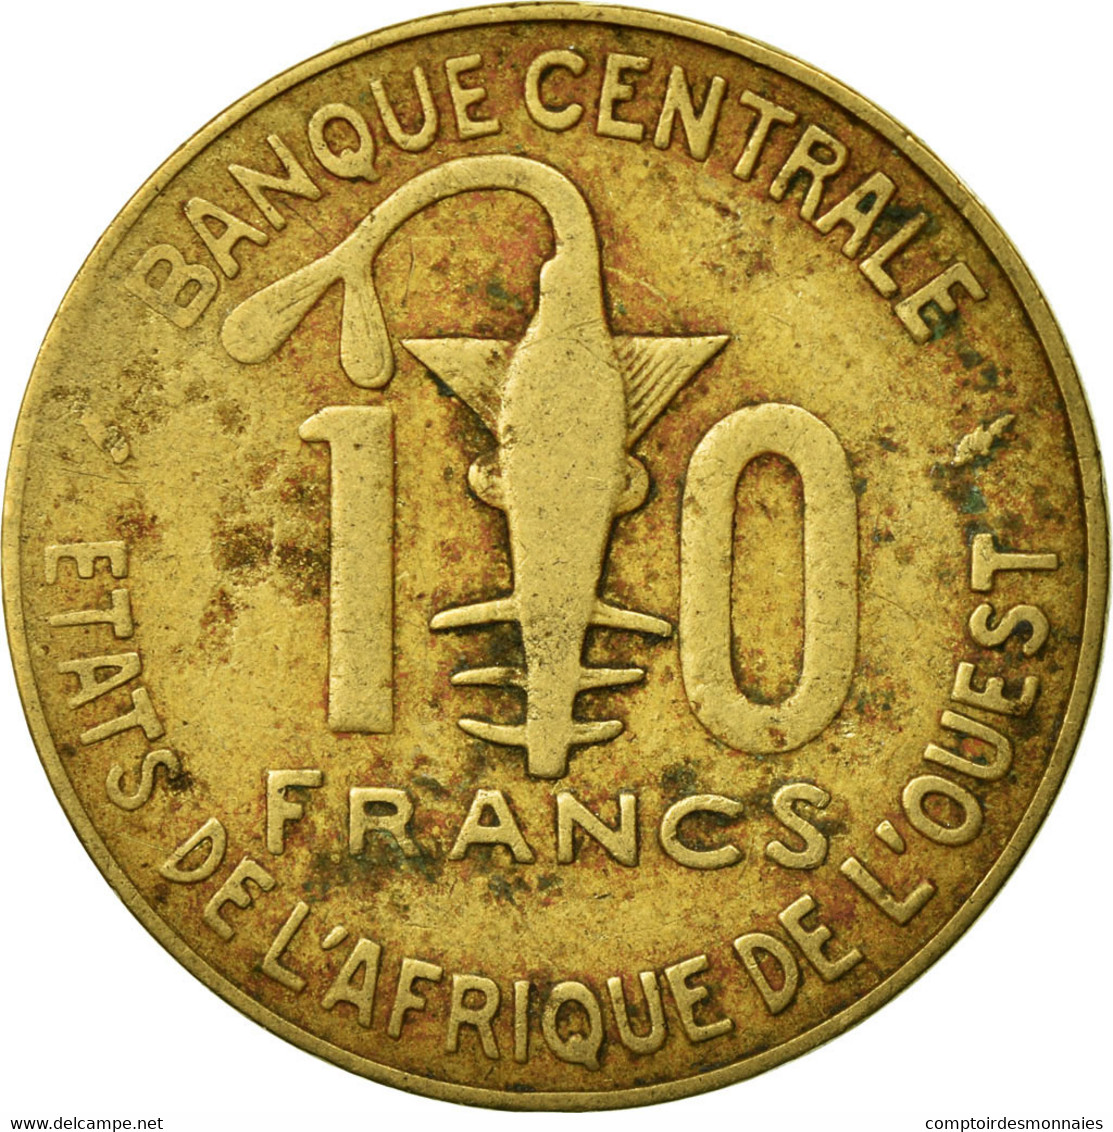 Monnaie, West African States, 10 Francs, 1987, Paris, TB, Aluminum-Bronze, KM:10 - Côte-d'Ivoire